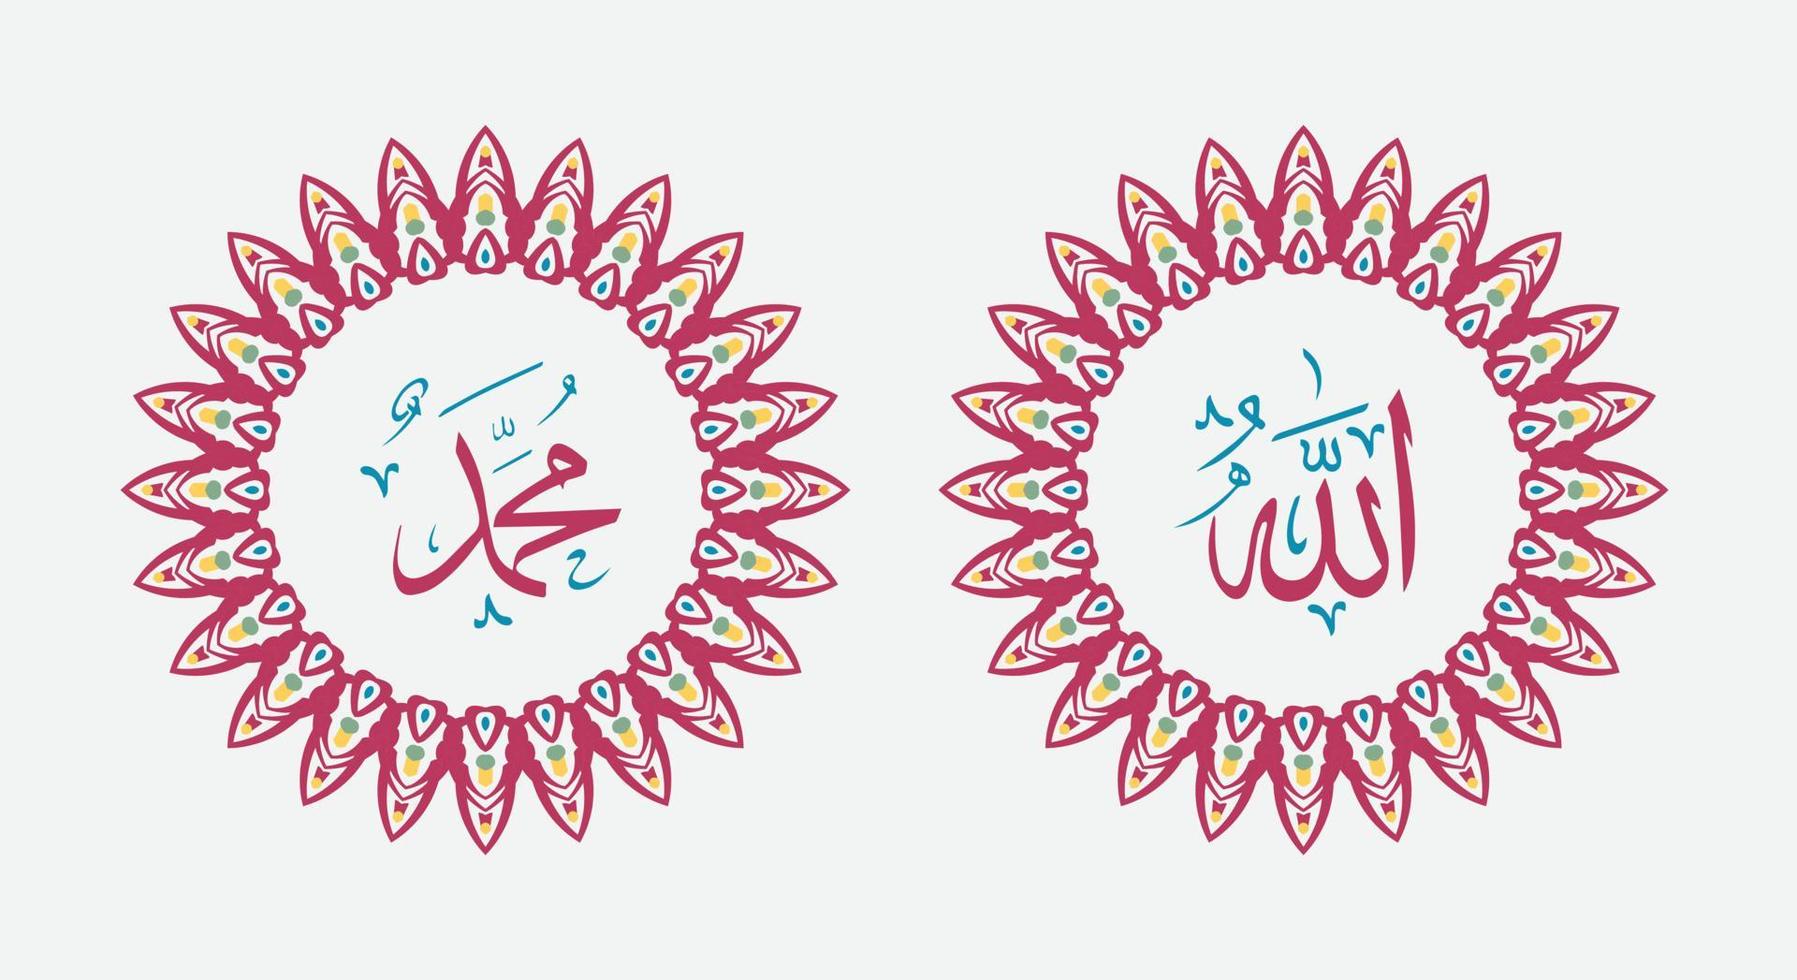 allah muhammad nombre de allah muhammad, arte de caligrafía islámica árabe de allah muhammad, con marco tradicional y color retro vector